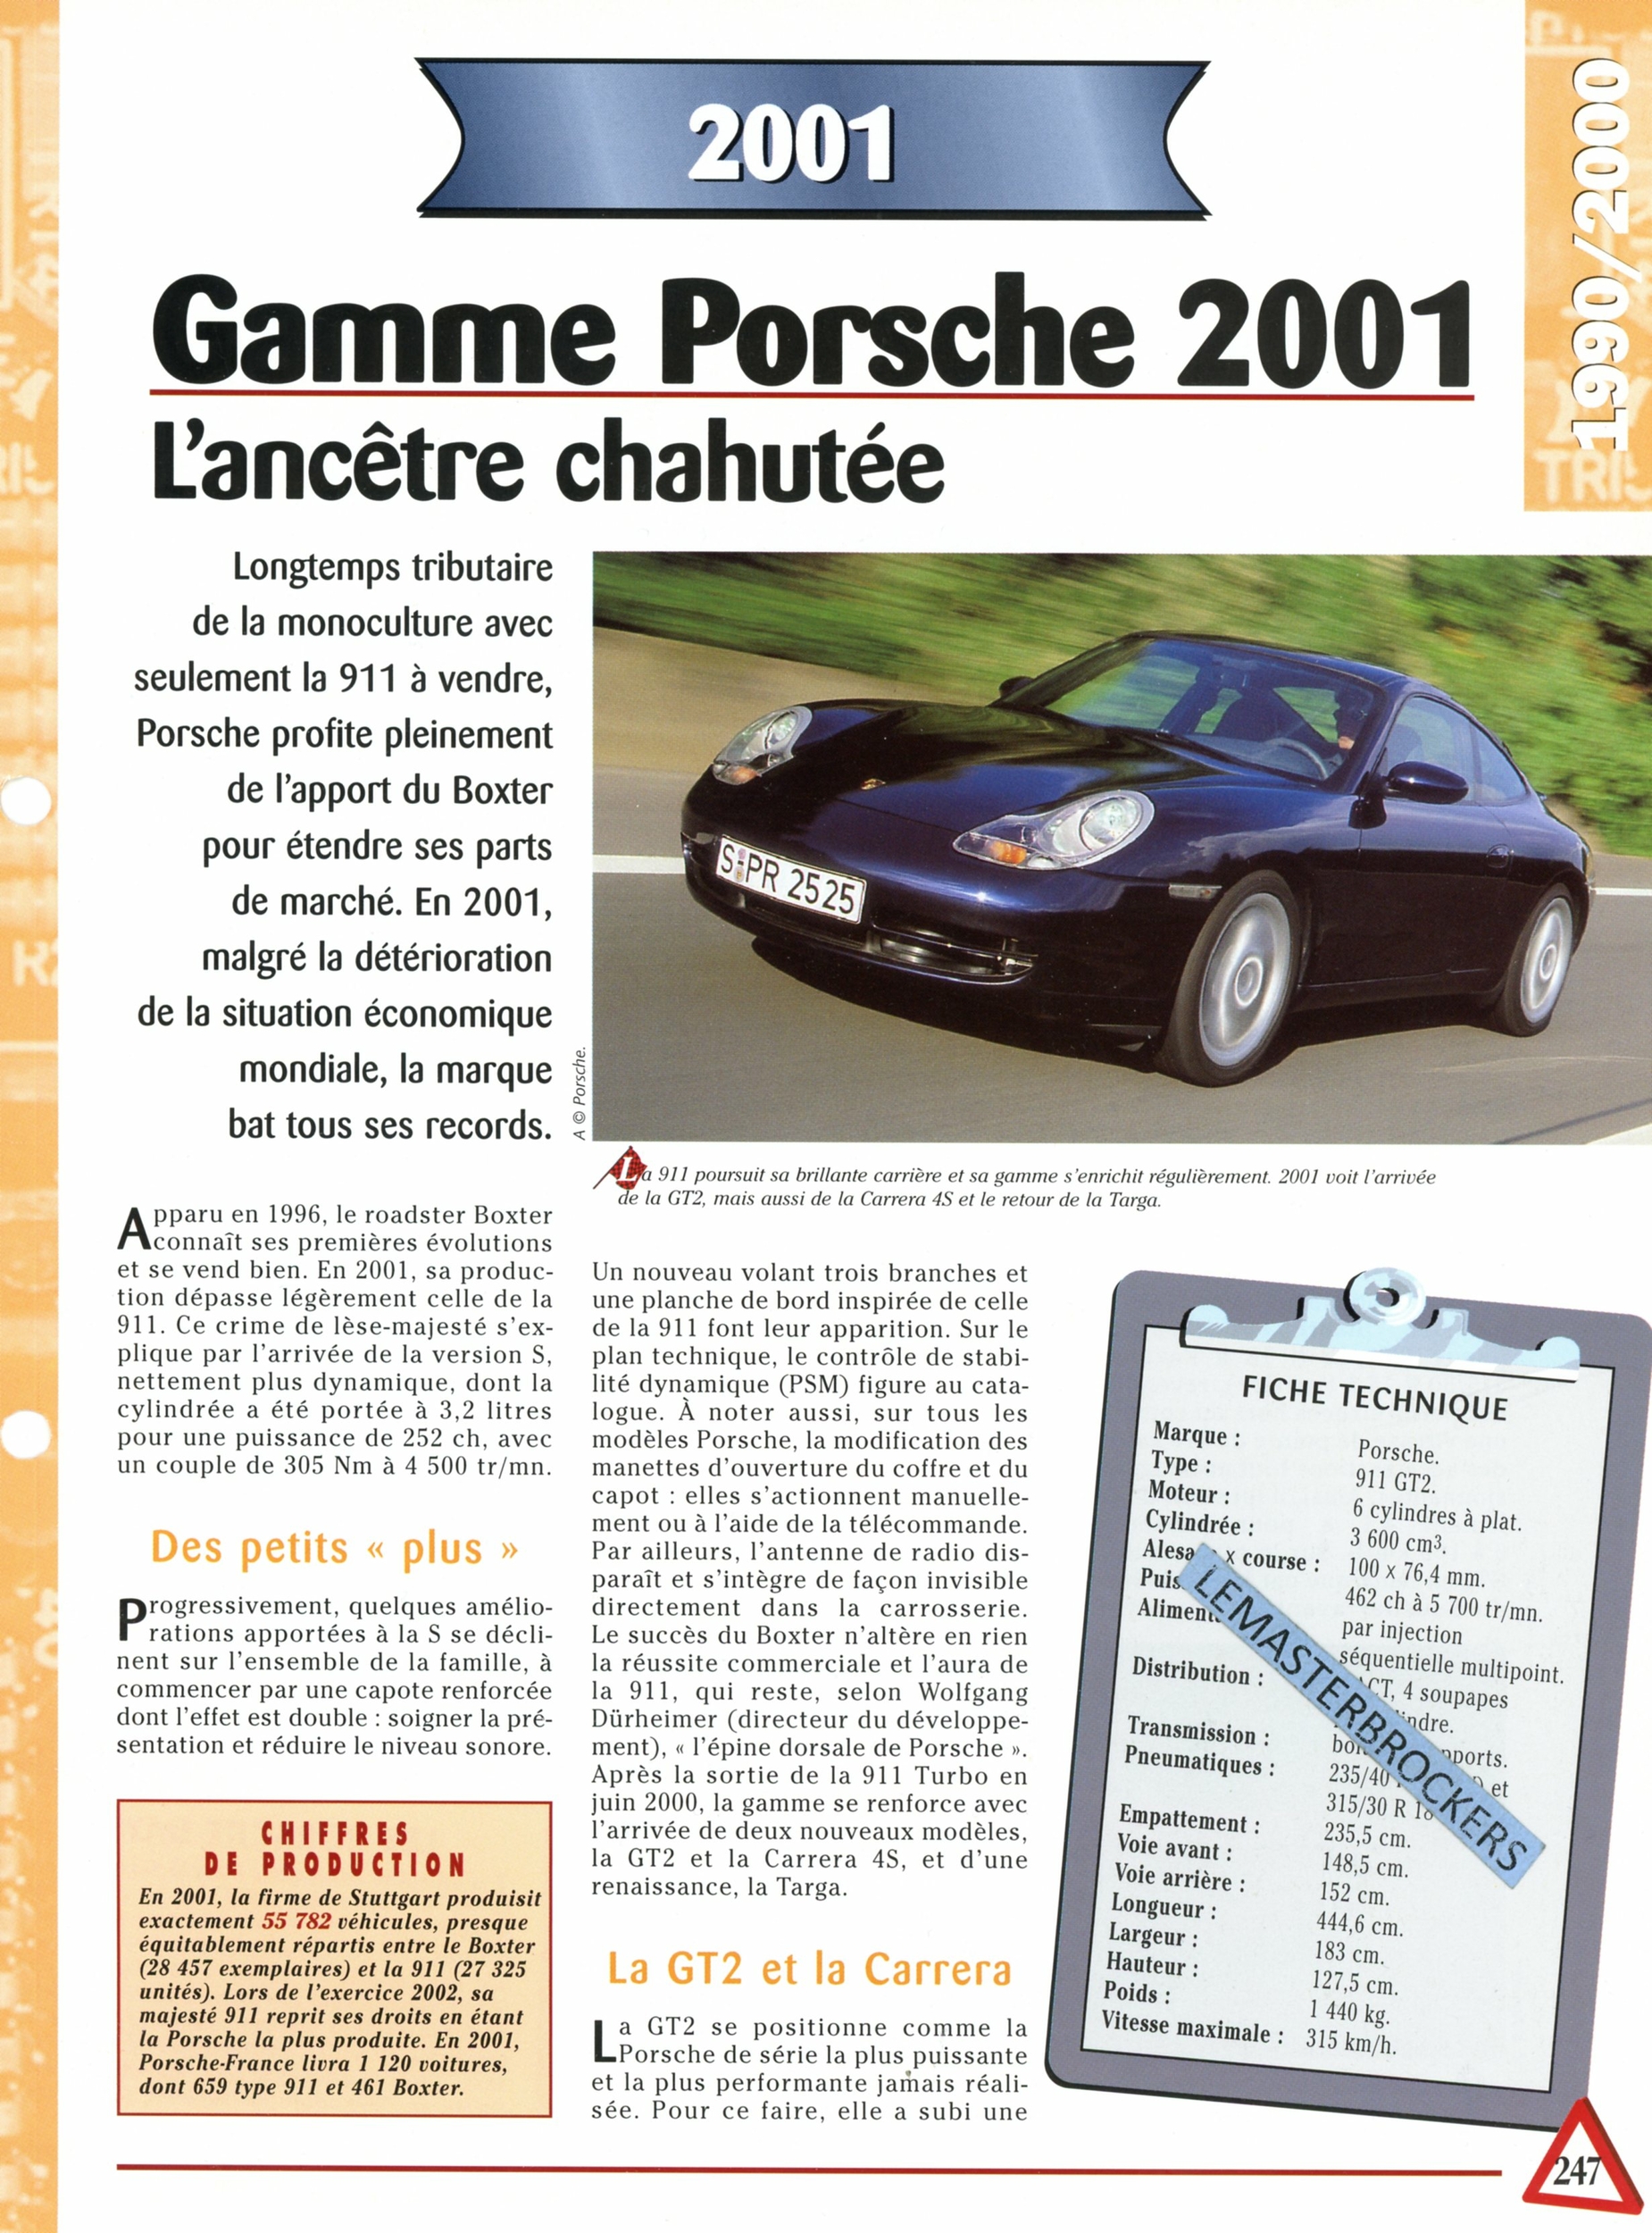 PORSCHE-GAMME-2001-FICHE-AUTO-HACHETTE-LEMASTERBROCKERS-FICHE-TECHNIQUE